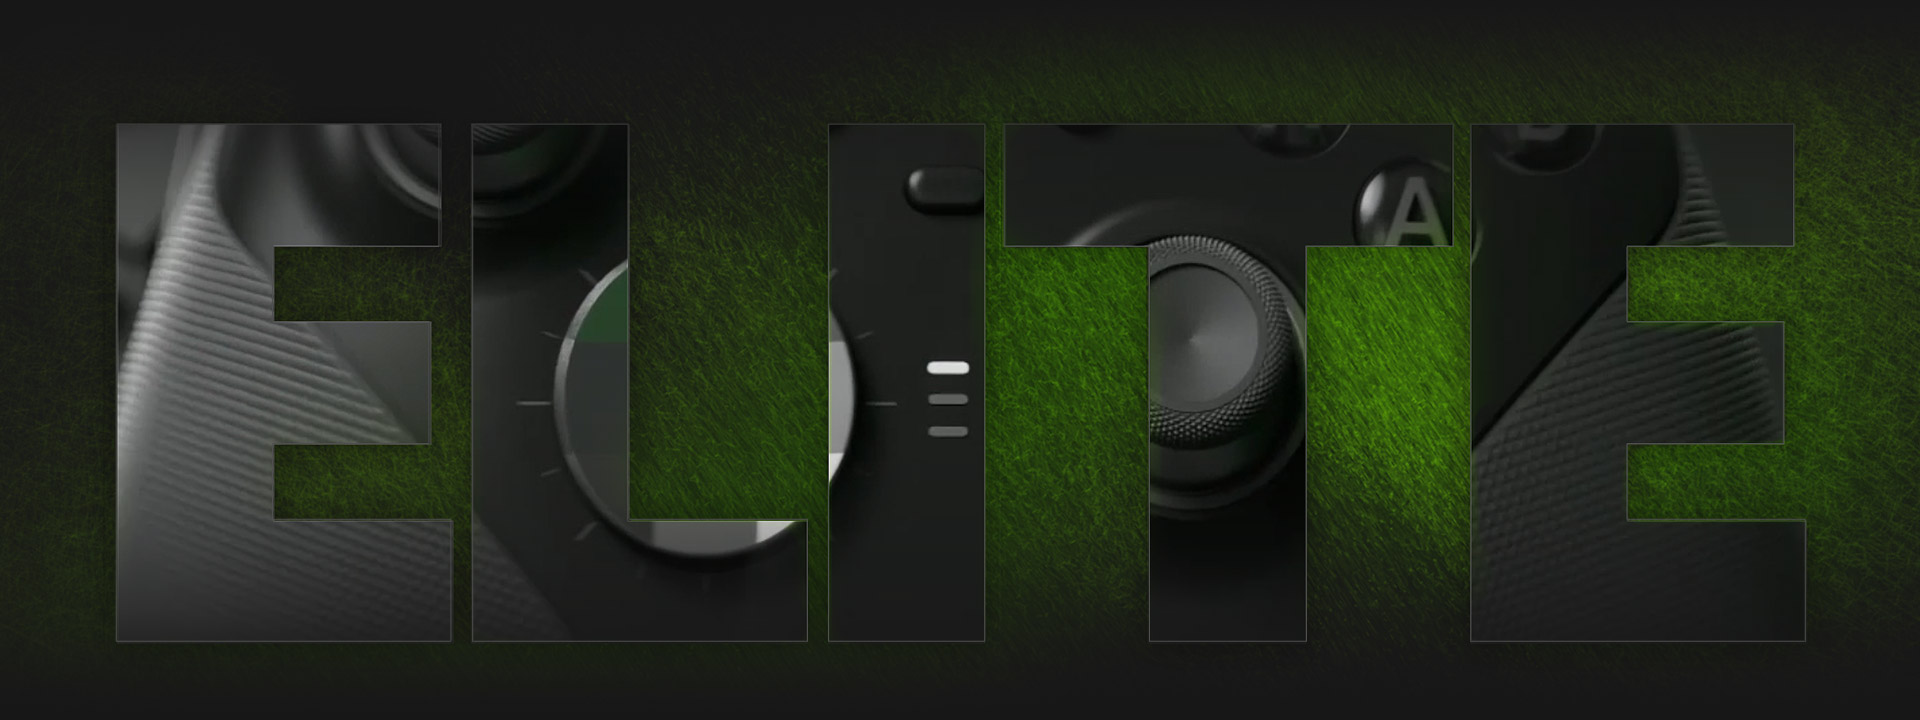 Κοντινό πλάνο των χειριστηρίων Xbox Elite μέσα από ένα κομμένο σχέδιο της λέξης elite.